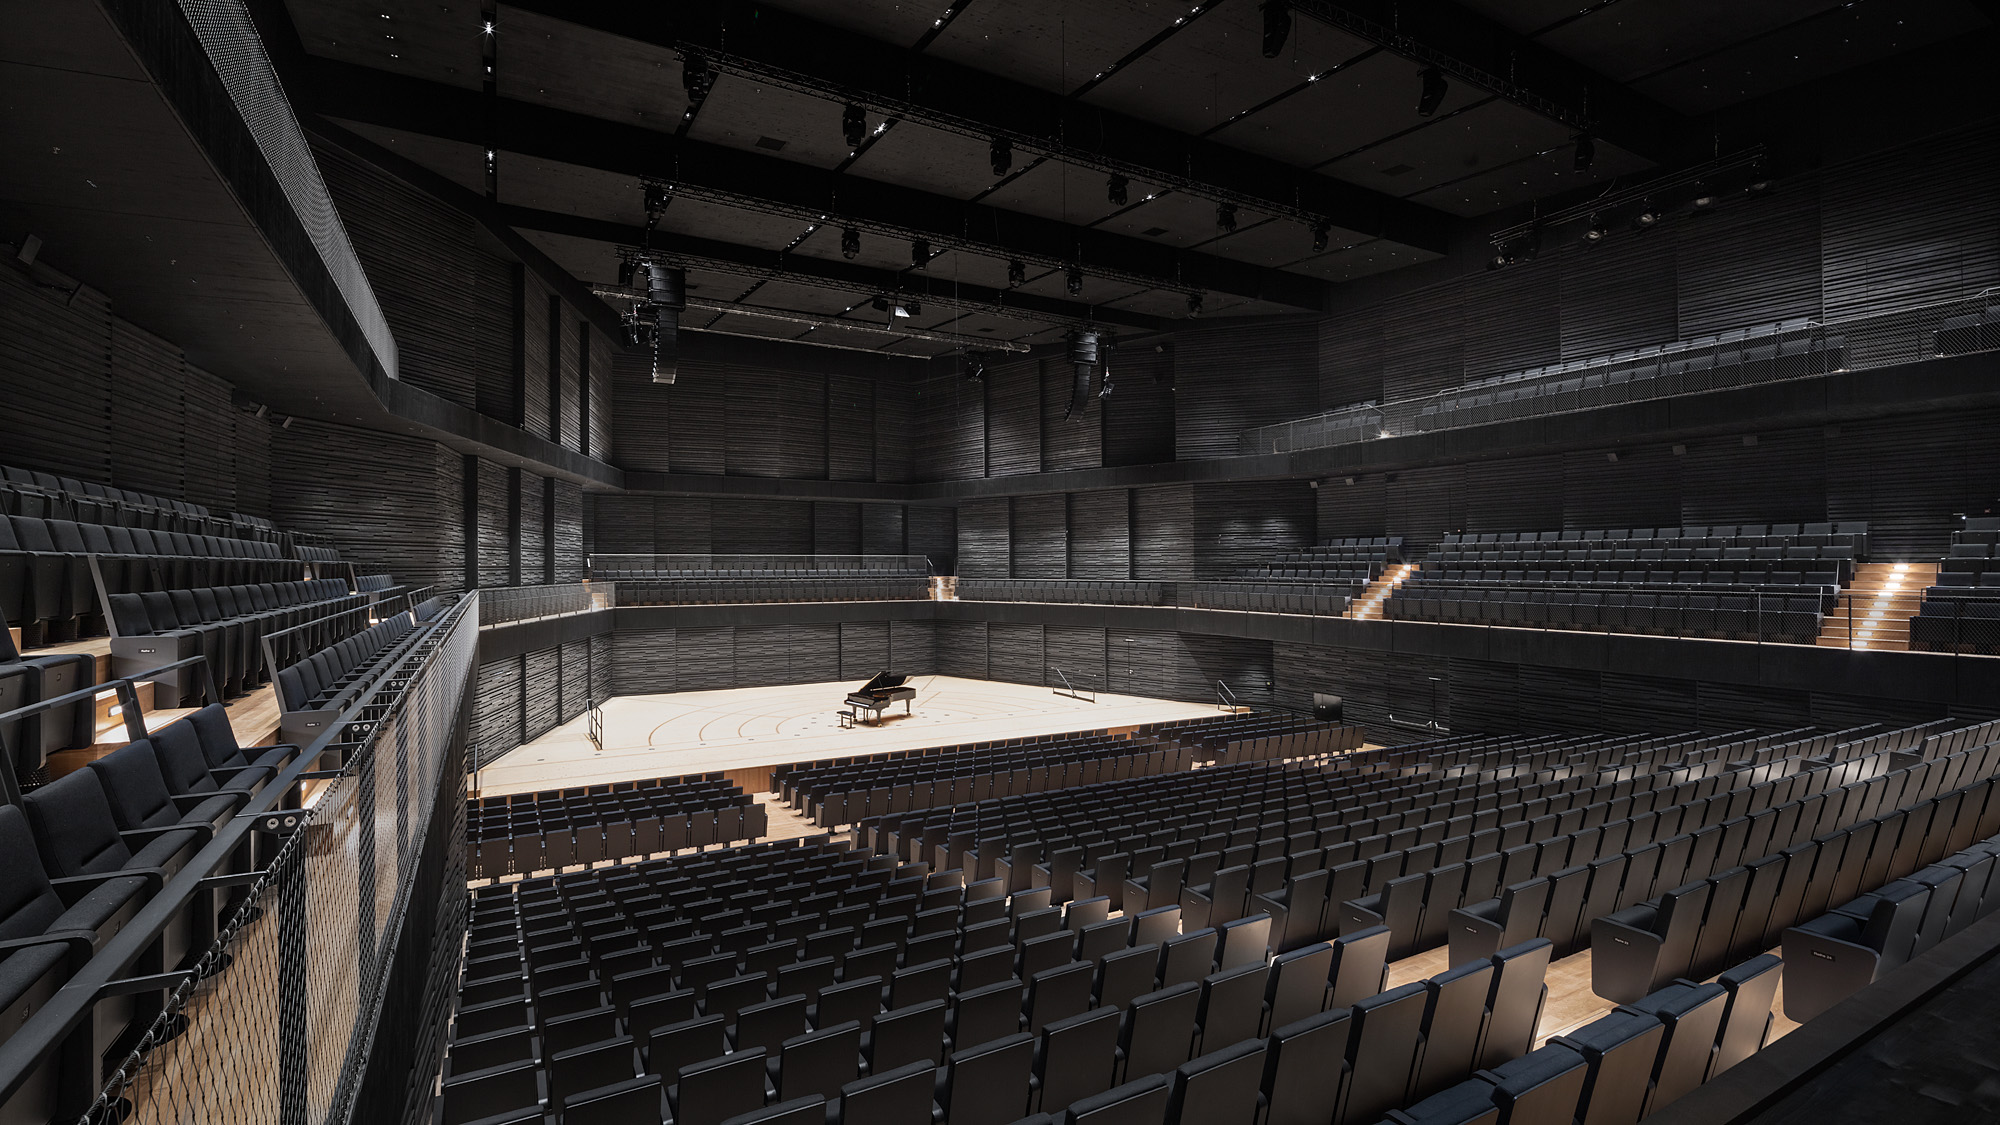 Leerer Konzertsaal mit schwarzer Holzvertäfelung, der Boden und die Bühne sind aus hellem Holz, schwarze Bestuhlung, auf der Bühne ein Flügel